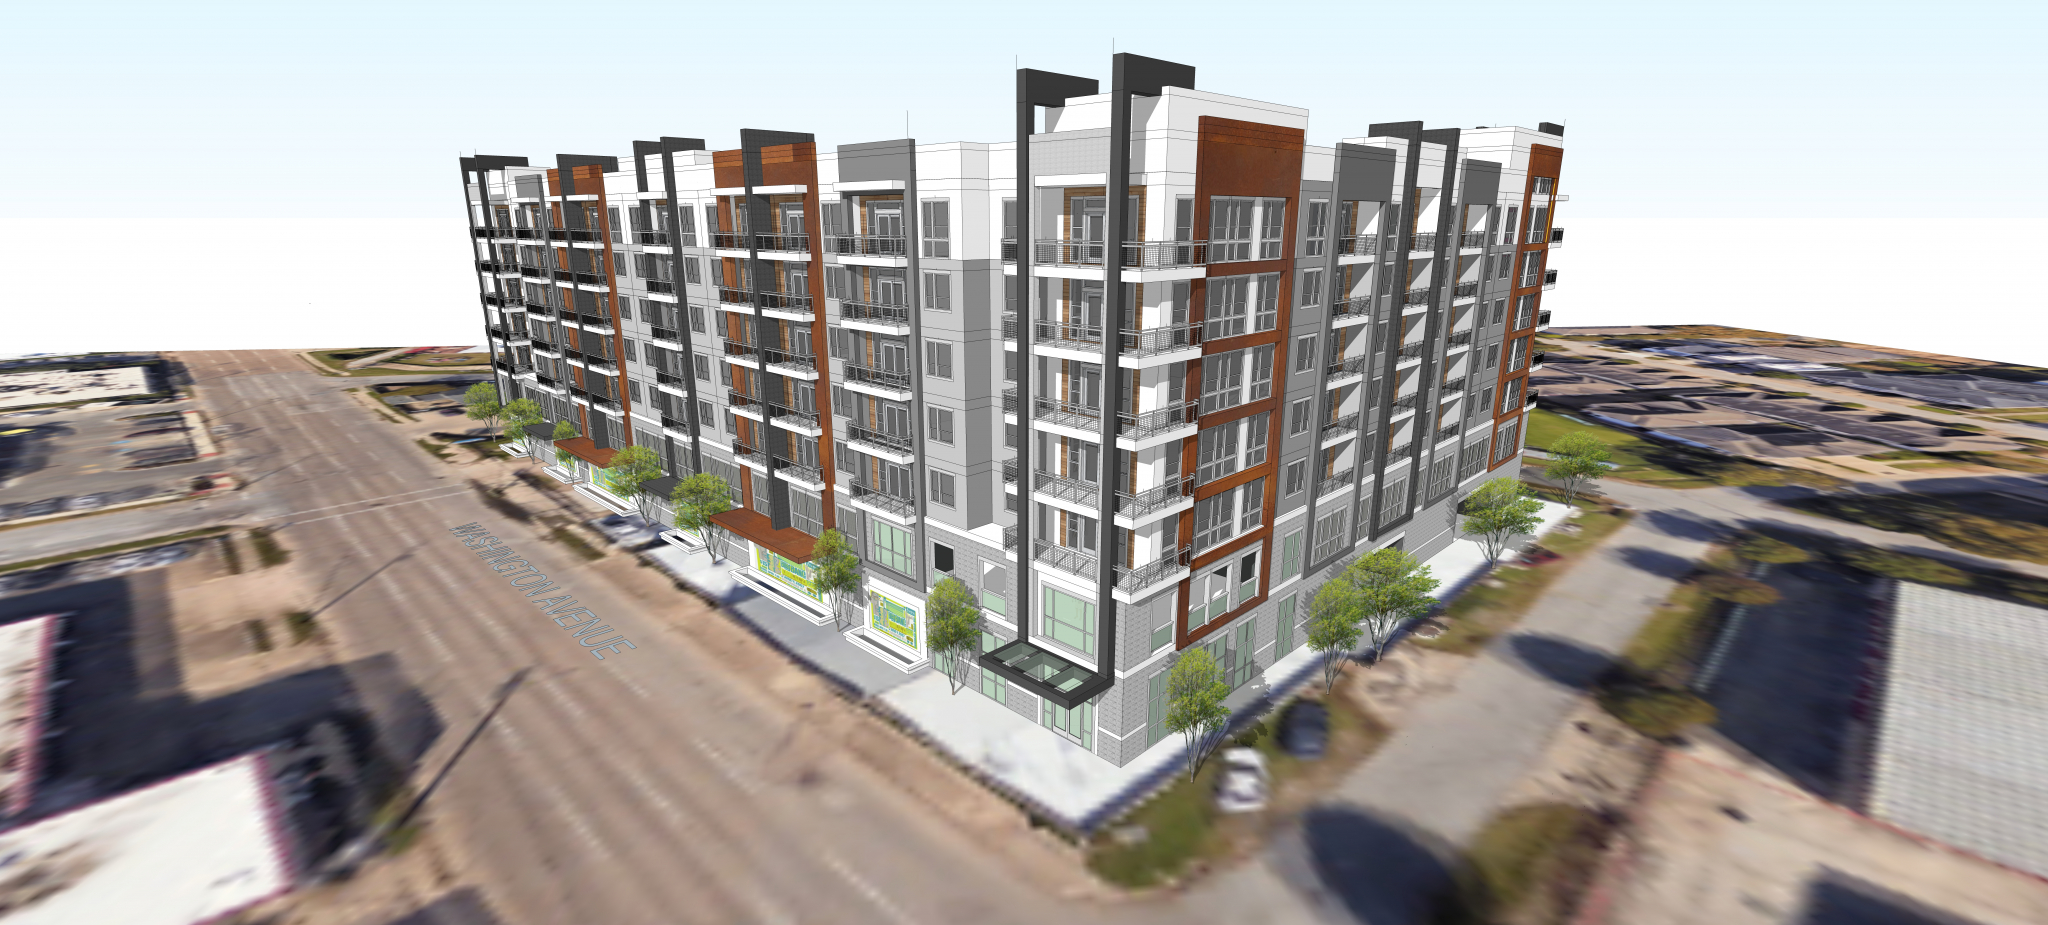 Wood Partners Starts Washington Avenue Apartment Midrise